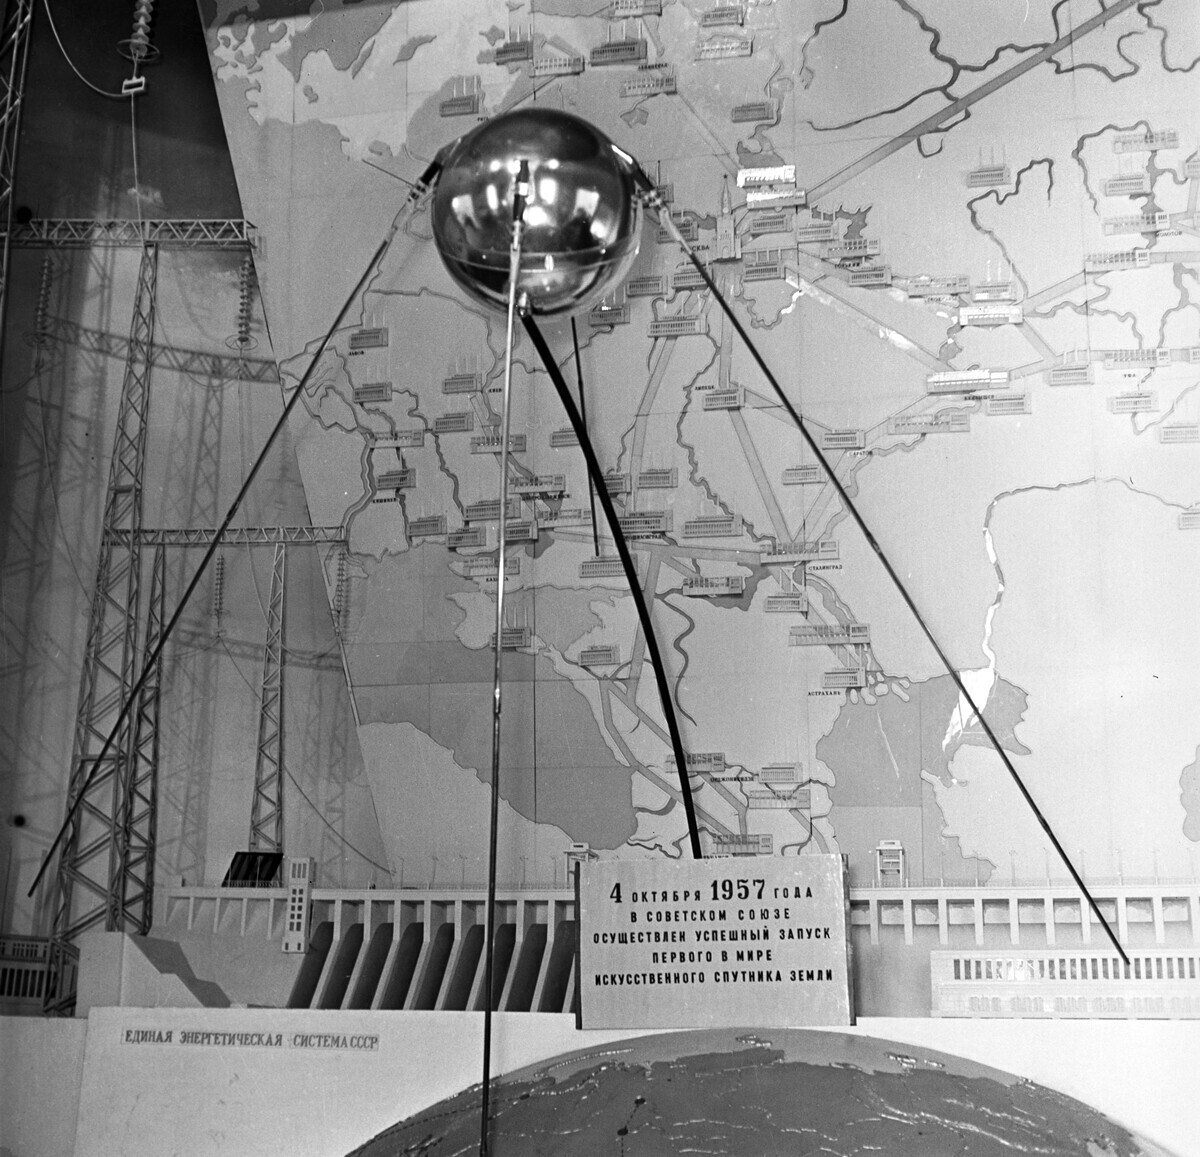 Модел на првиот советски вселенски вештачки сателит на Земјата во павилјонот „Наука“ на Сесојузната земјоделска изложба во Москва. Советскиот вселенски брод, лансиран во орбитата на 4 октомври 1957 година.

